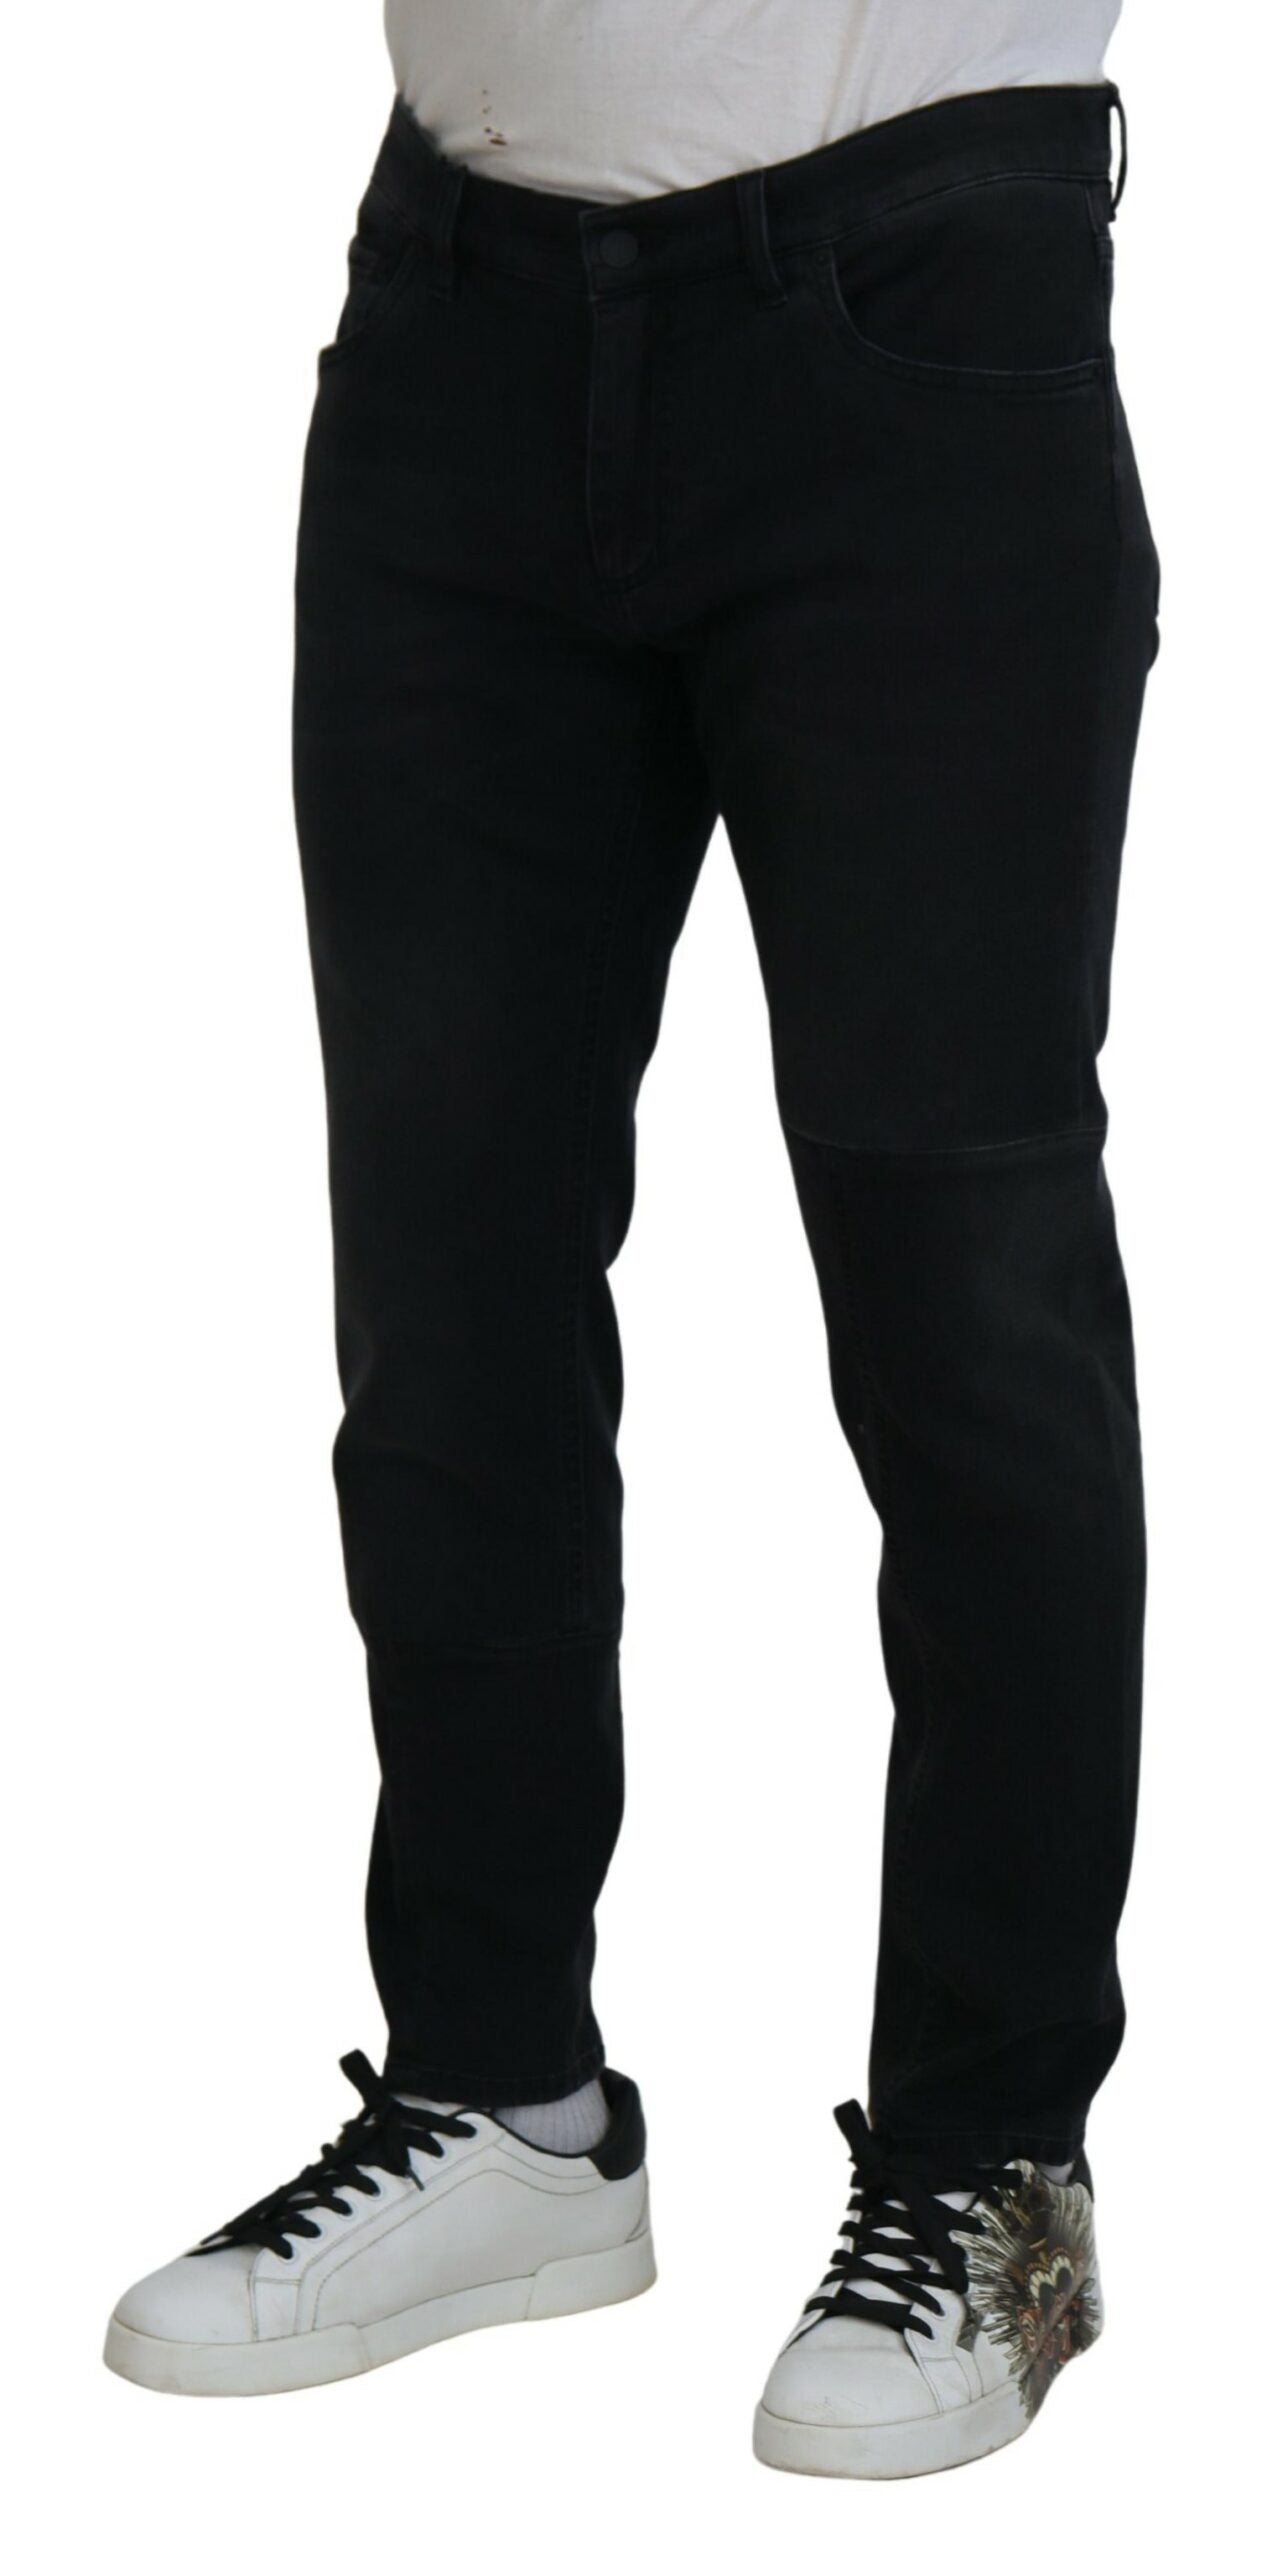 Dolce & Gabbana Chic Black Skinny Denim Jeans